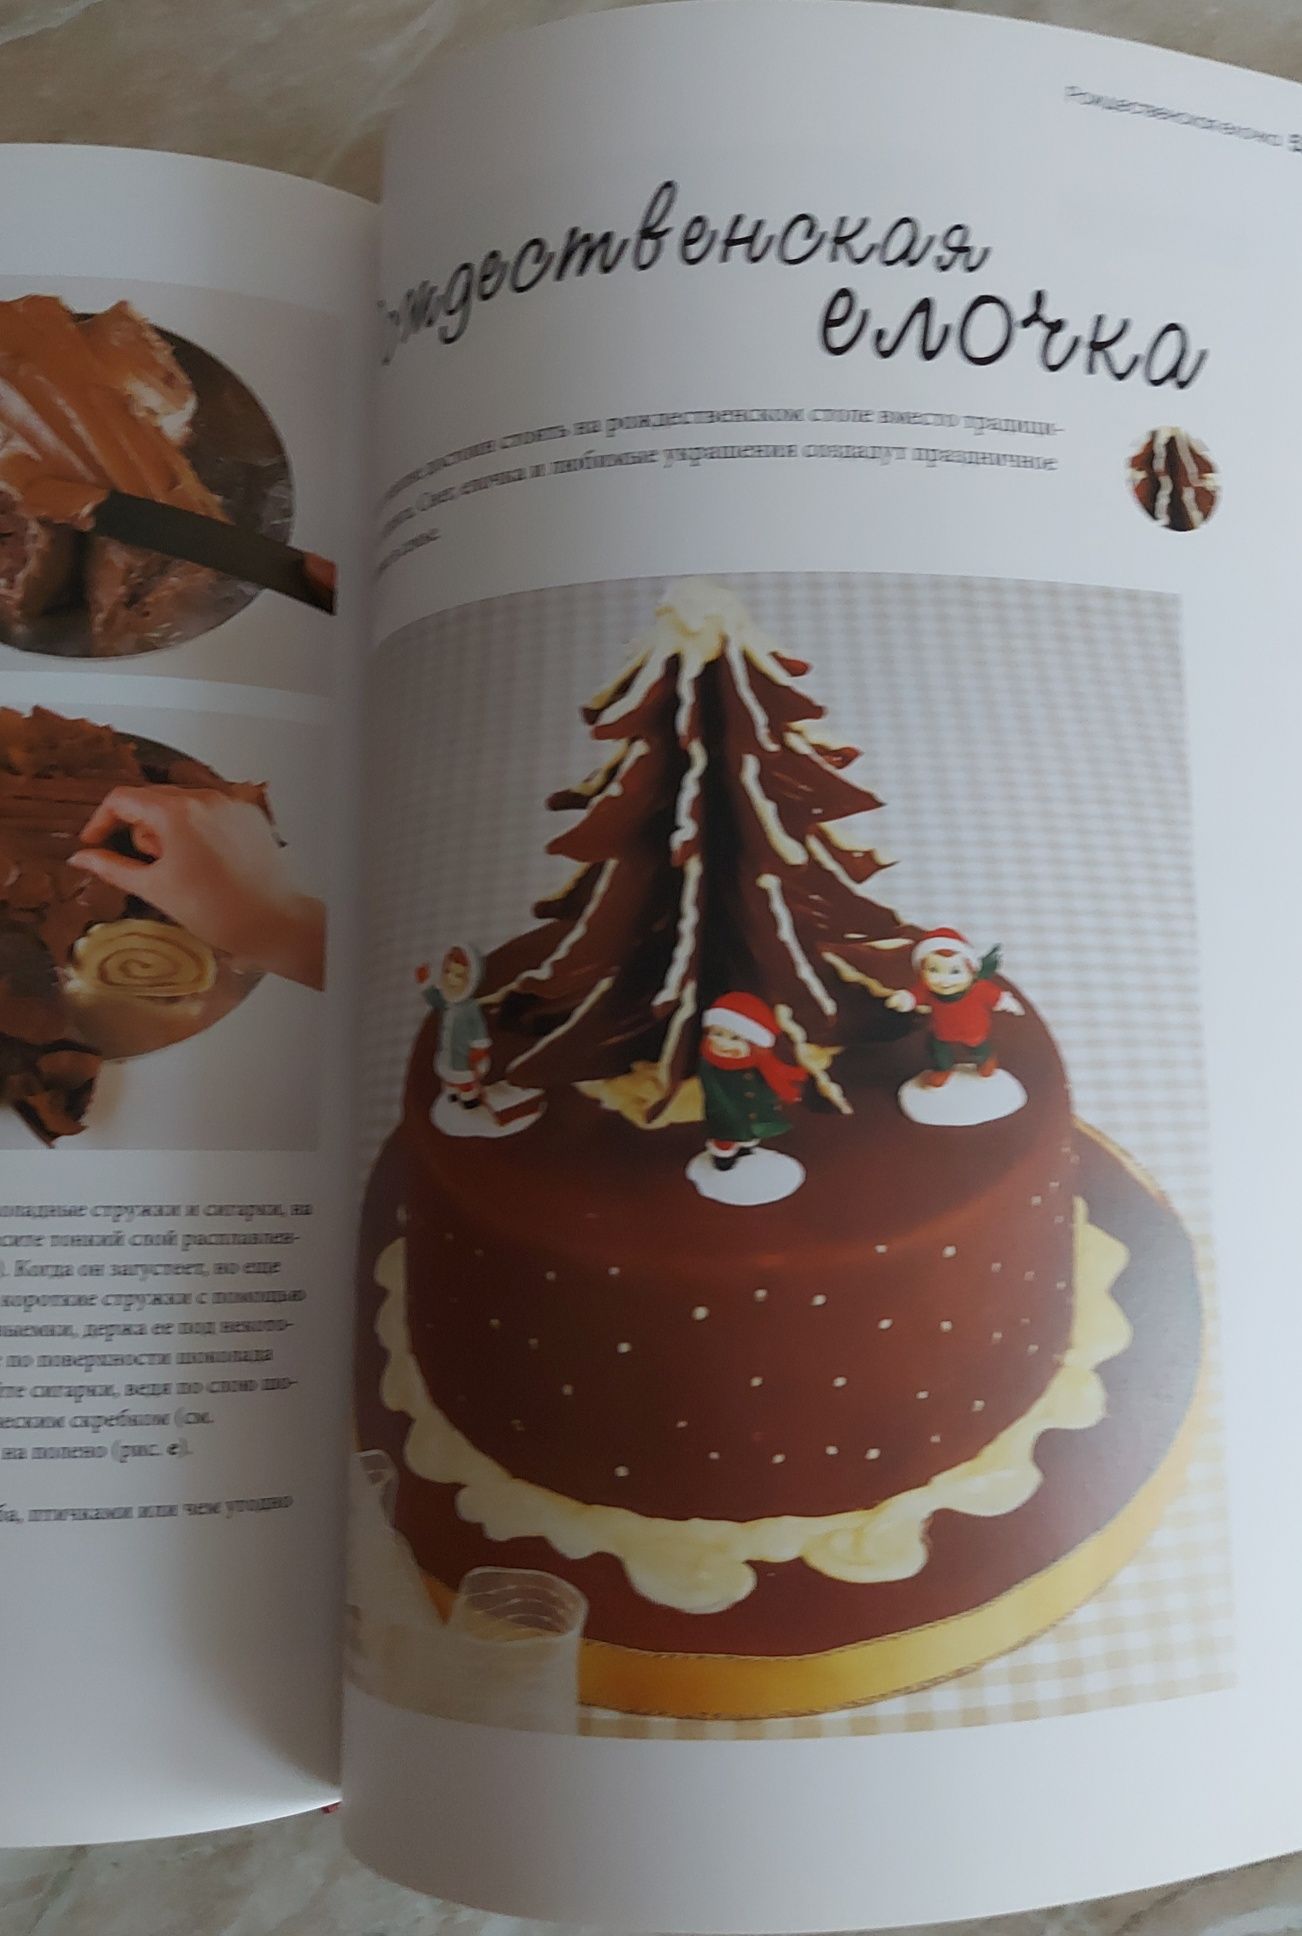 Книга кондитерская кулинария. Шоколадные торты